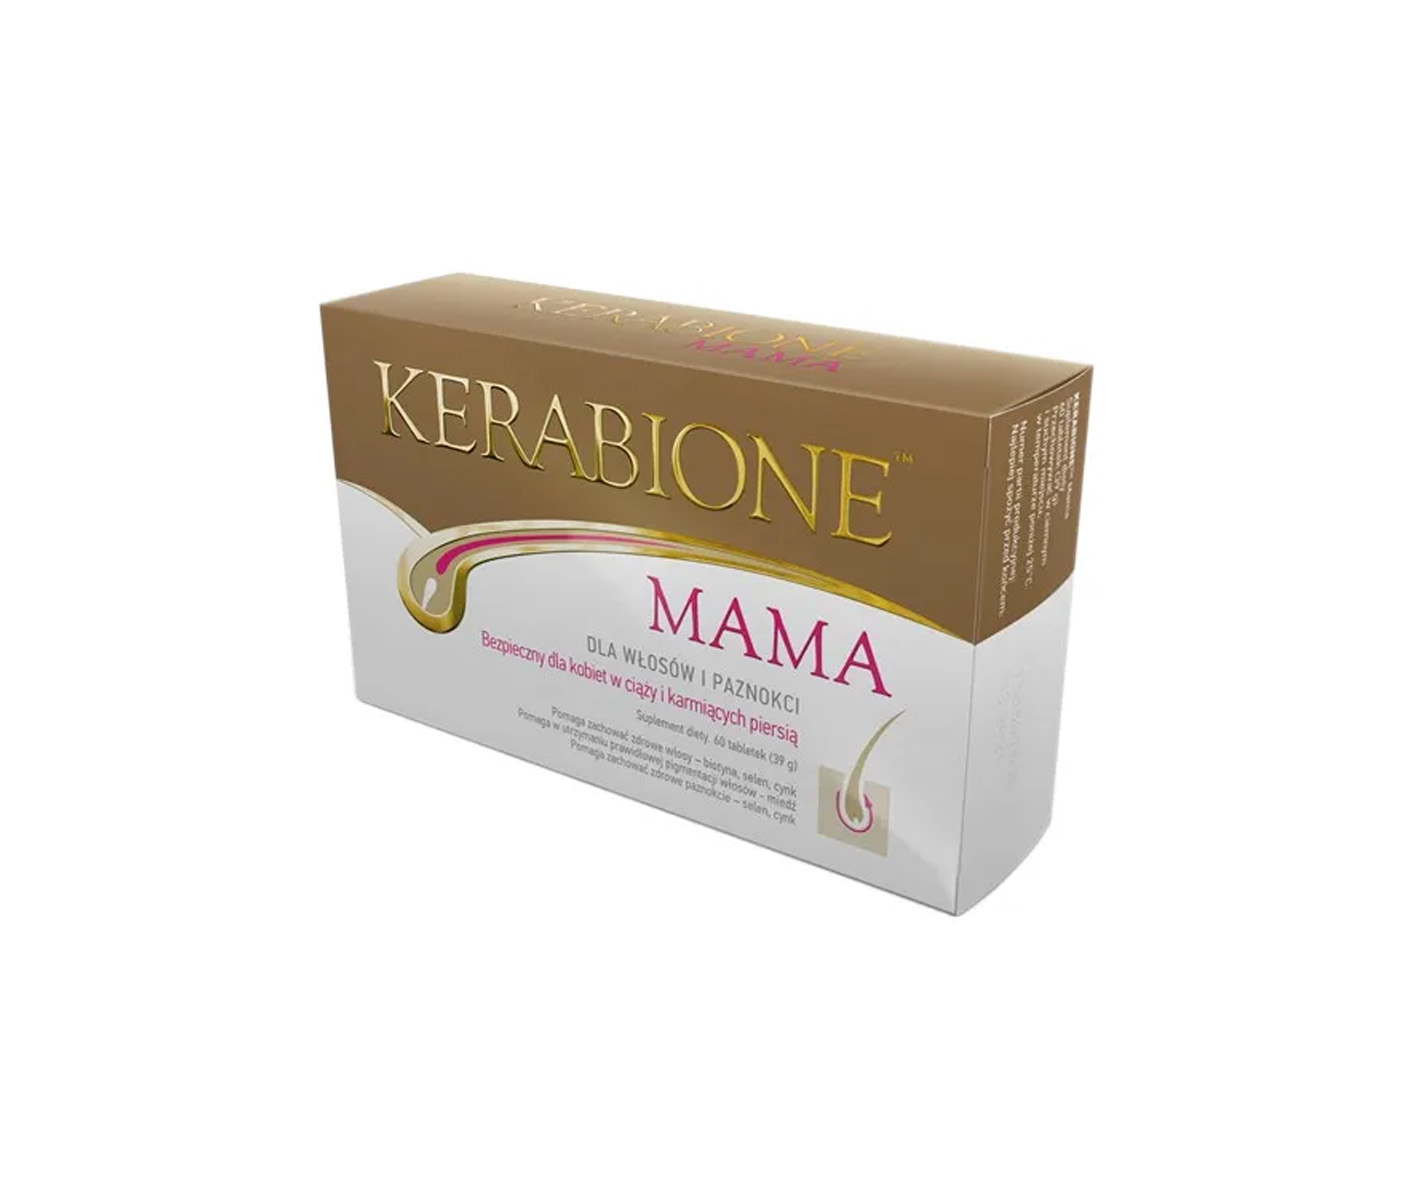 Kerabione Mama, Nahrungsergänzungsmittel für Haare nach der Schwangerschaft